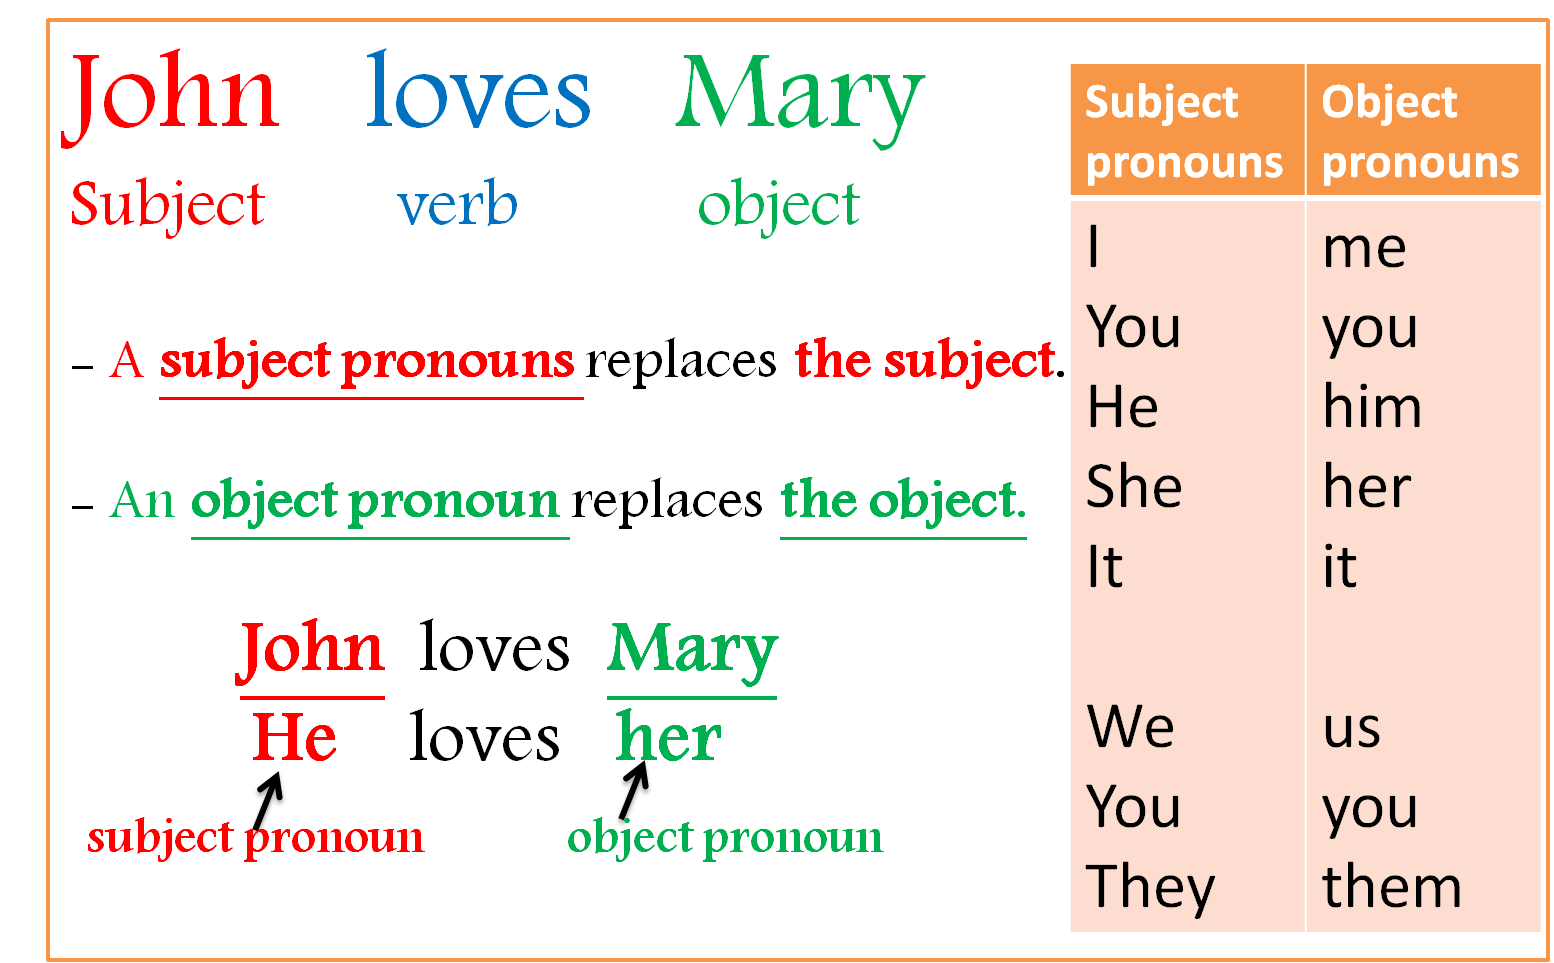 Personal object pronouns в английском. Объектные местоимения в английском. Местоимения объектного падежа в английском. Объектные местоимения в английском языке таблица.